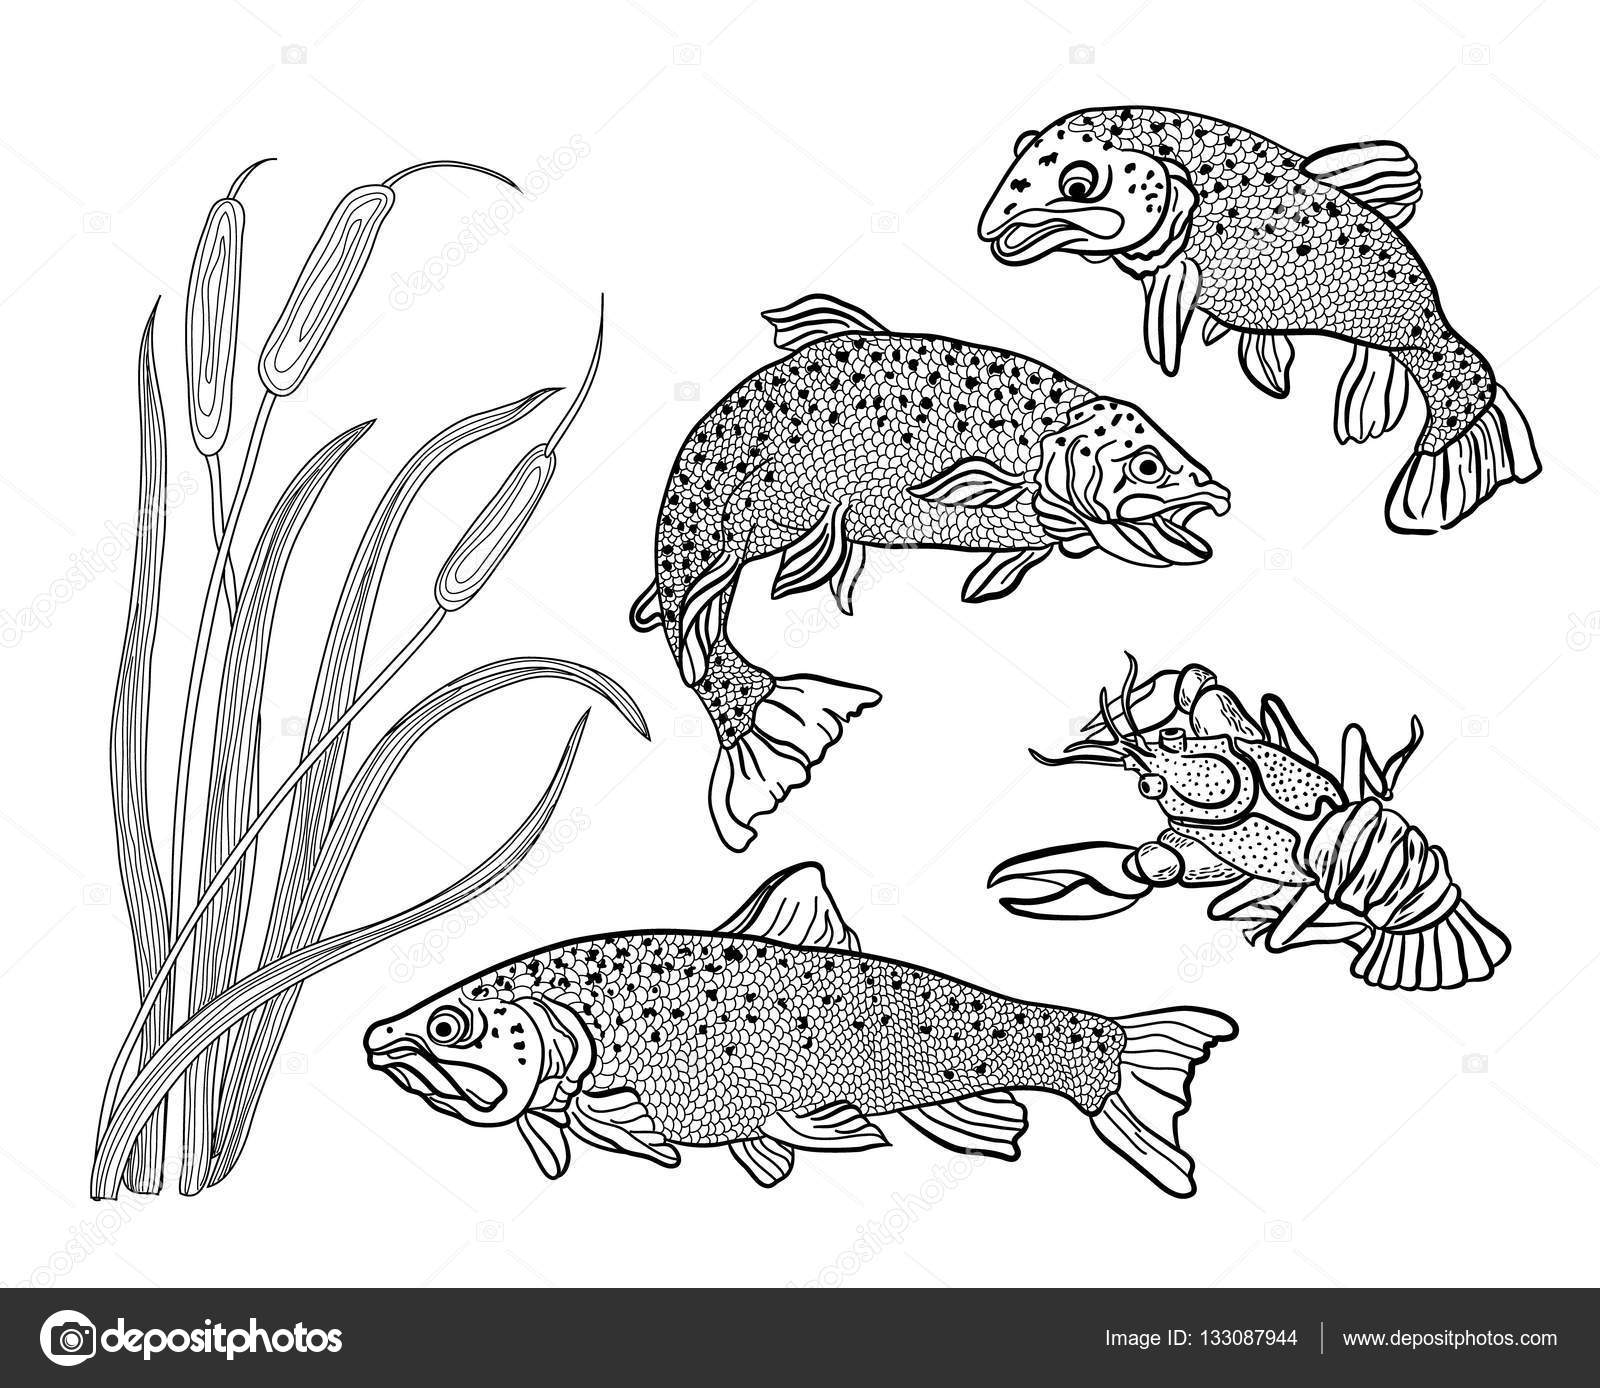 Disegni da colorare per adulti Set pesce trota cancro e canne — Vettoriali di vitasunny